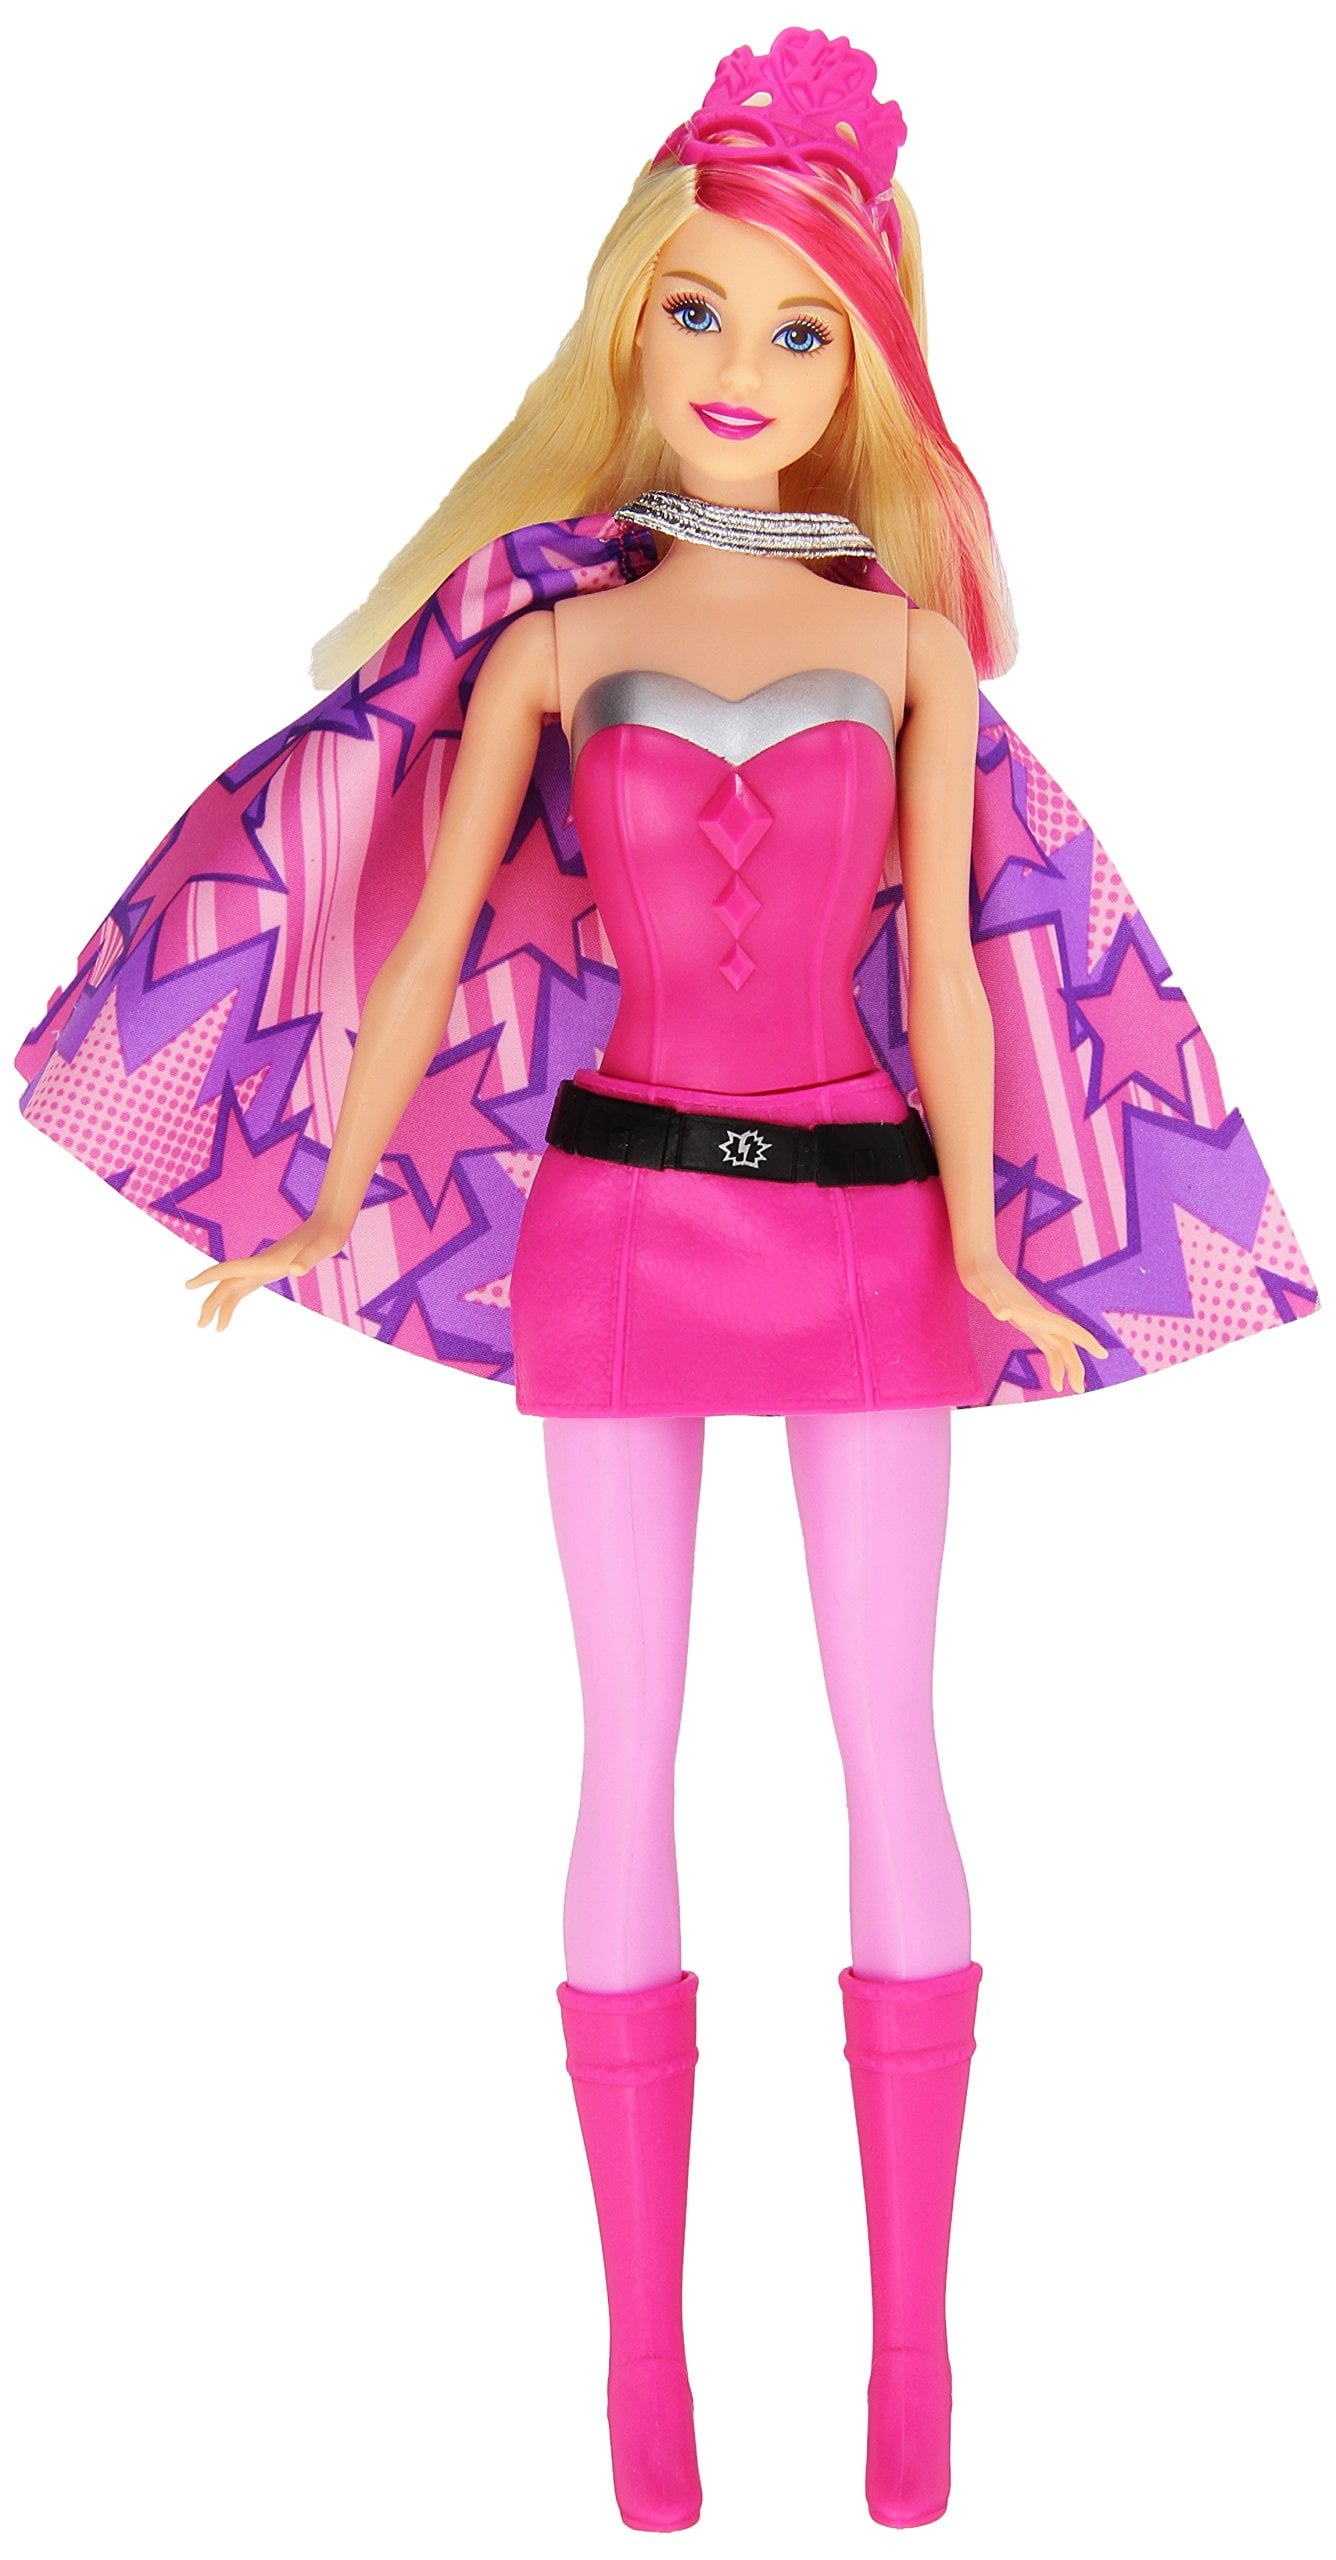 Barbie in Princess Power Super Hero Barbie Doll